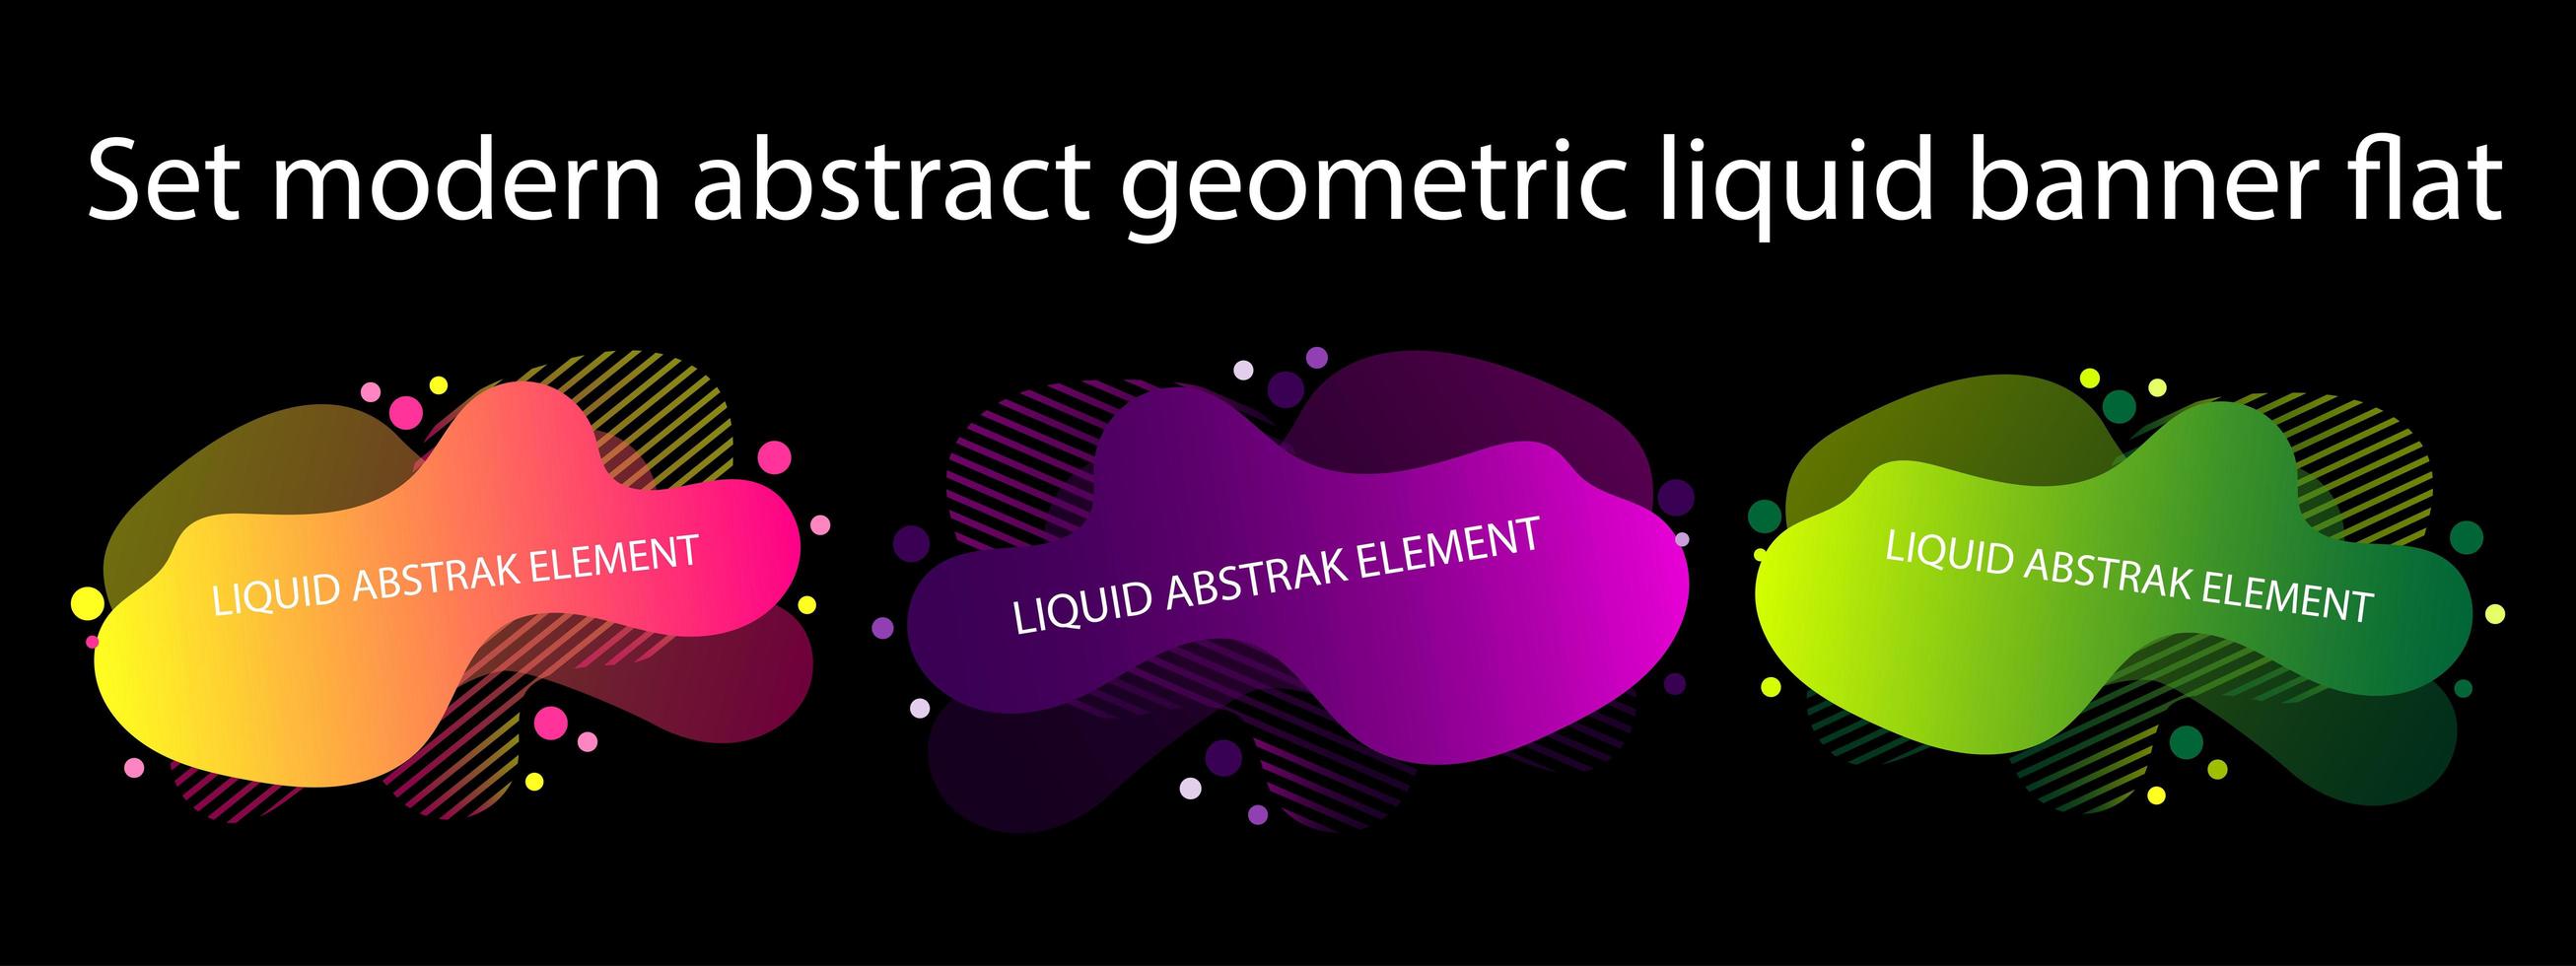 forme liquide geometriche astratte moderne sul nero vettore